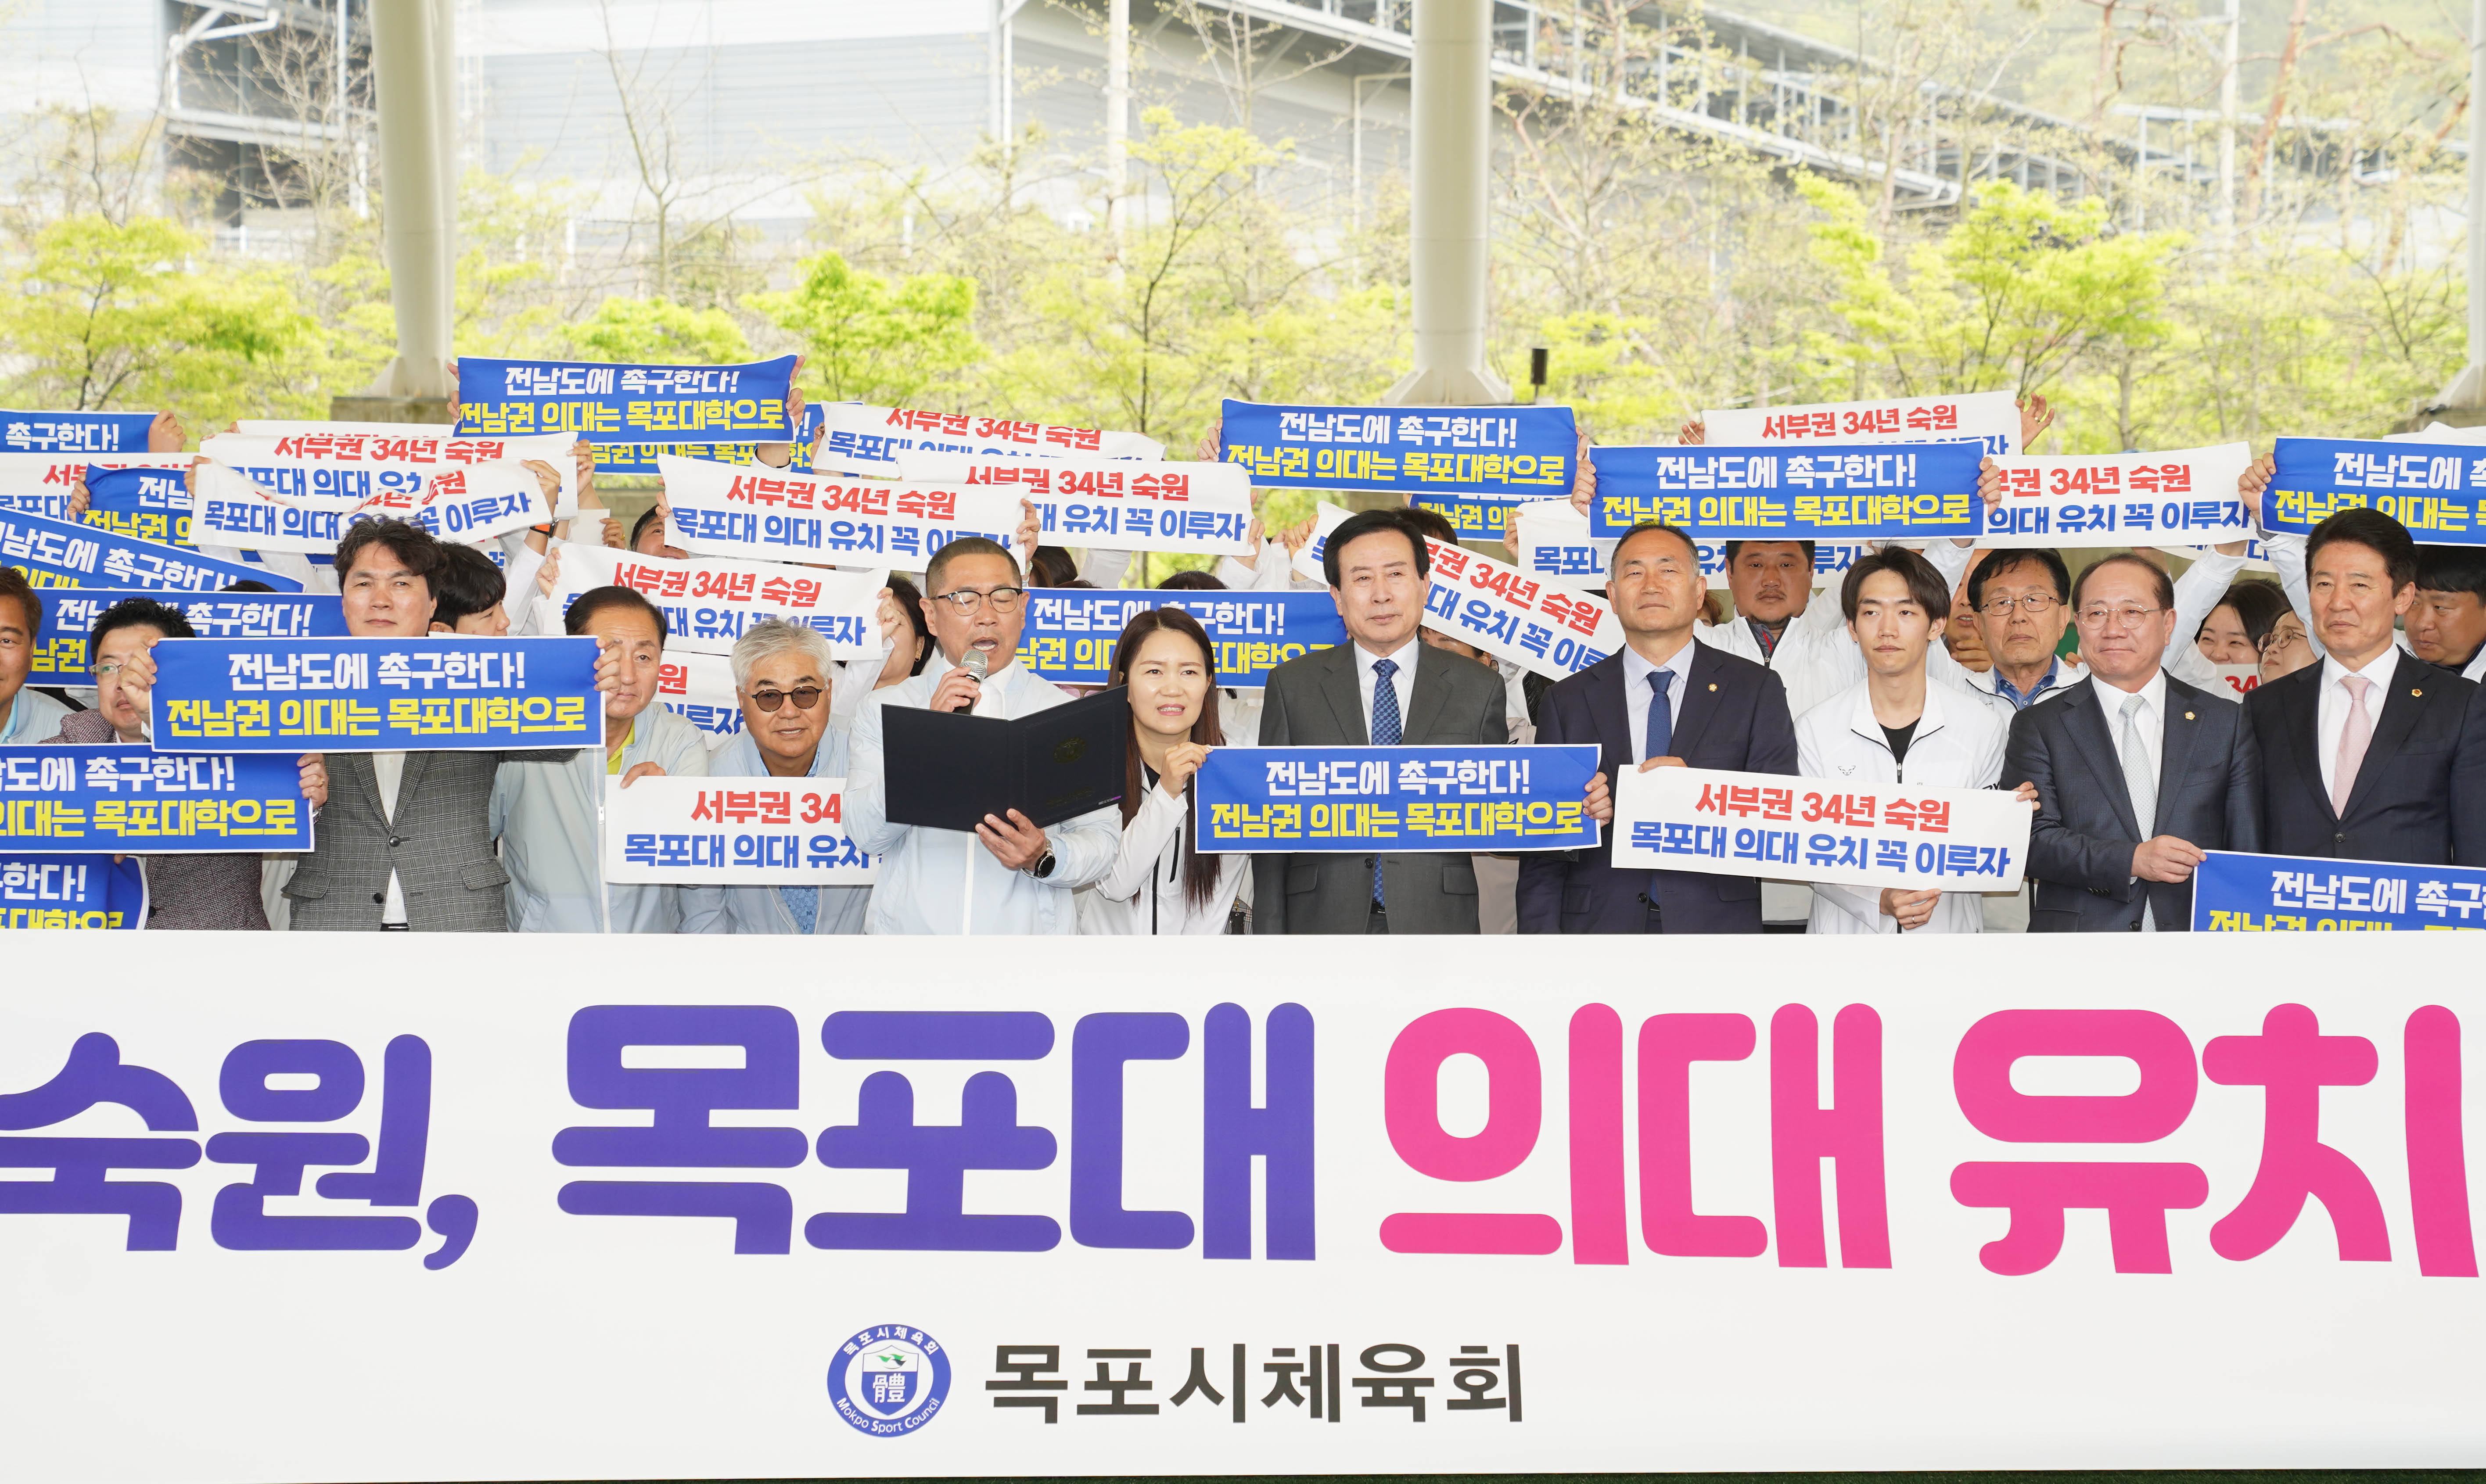 김성대 체육 회장이 마이크를 들고 국립 목포대 의과대학 유치을 위한 성명서를 발표하는 모습